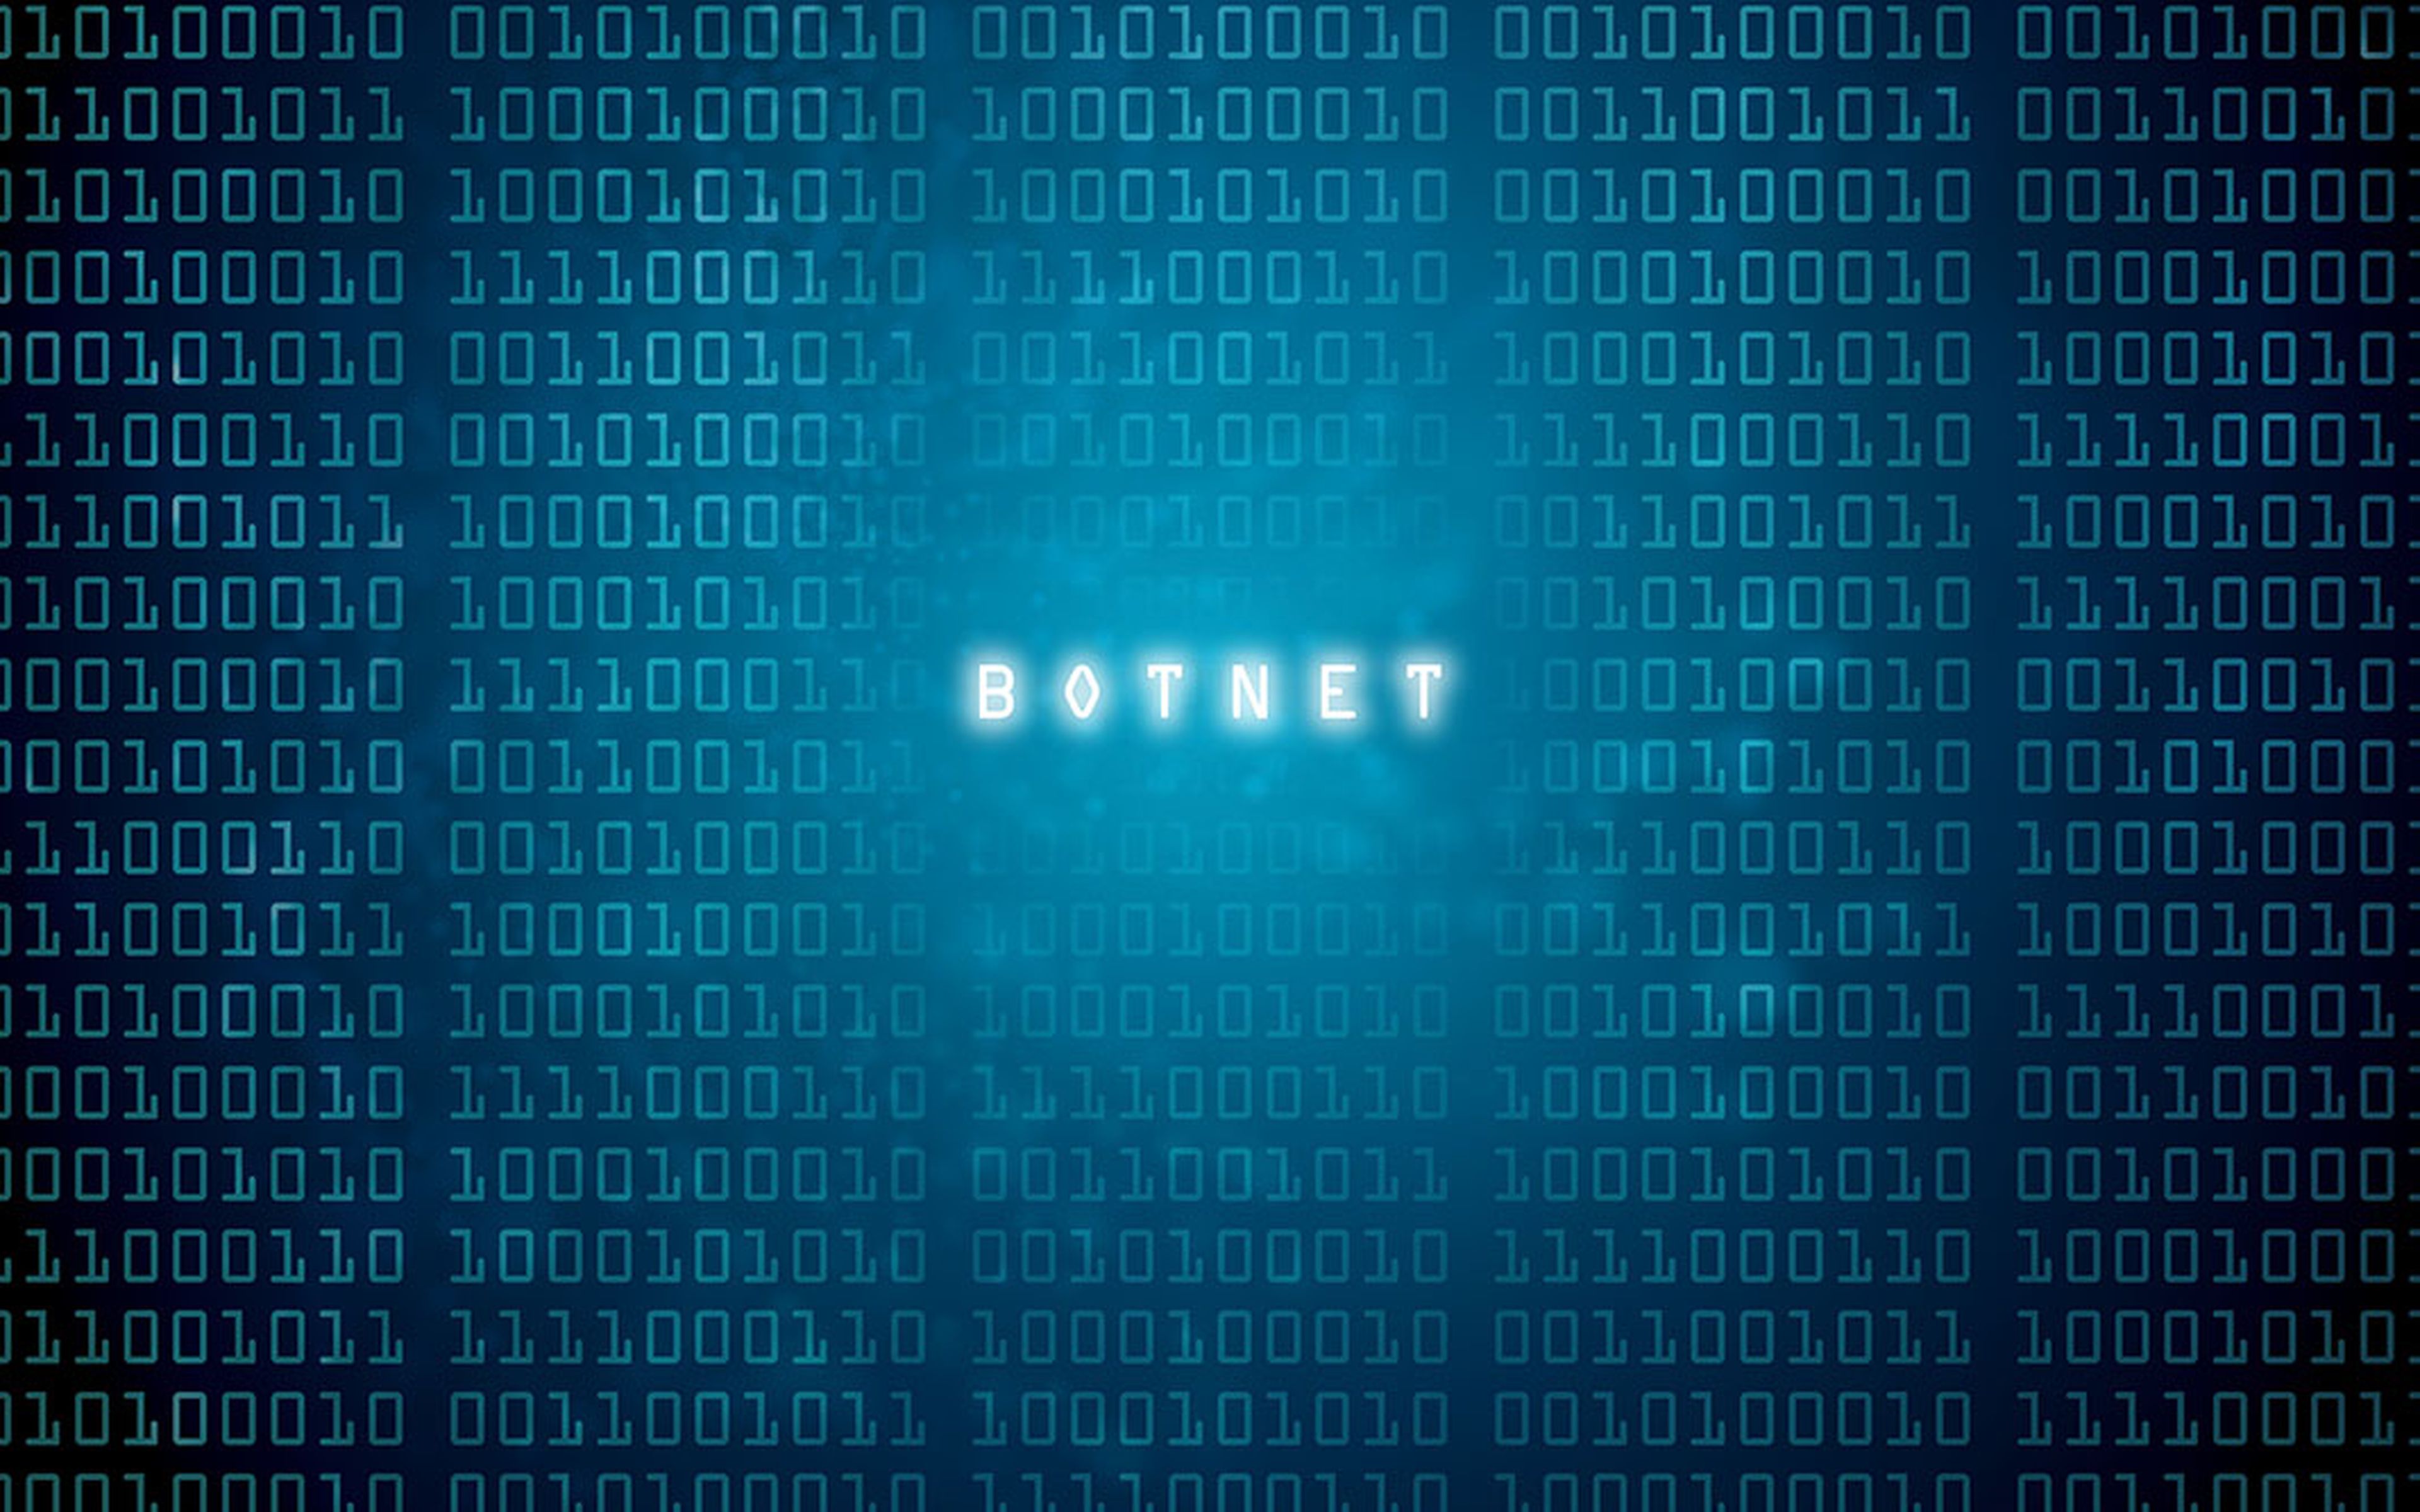 botnet bot-net computer virus